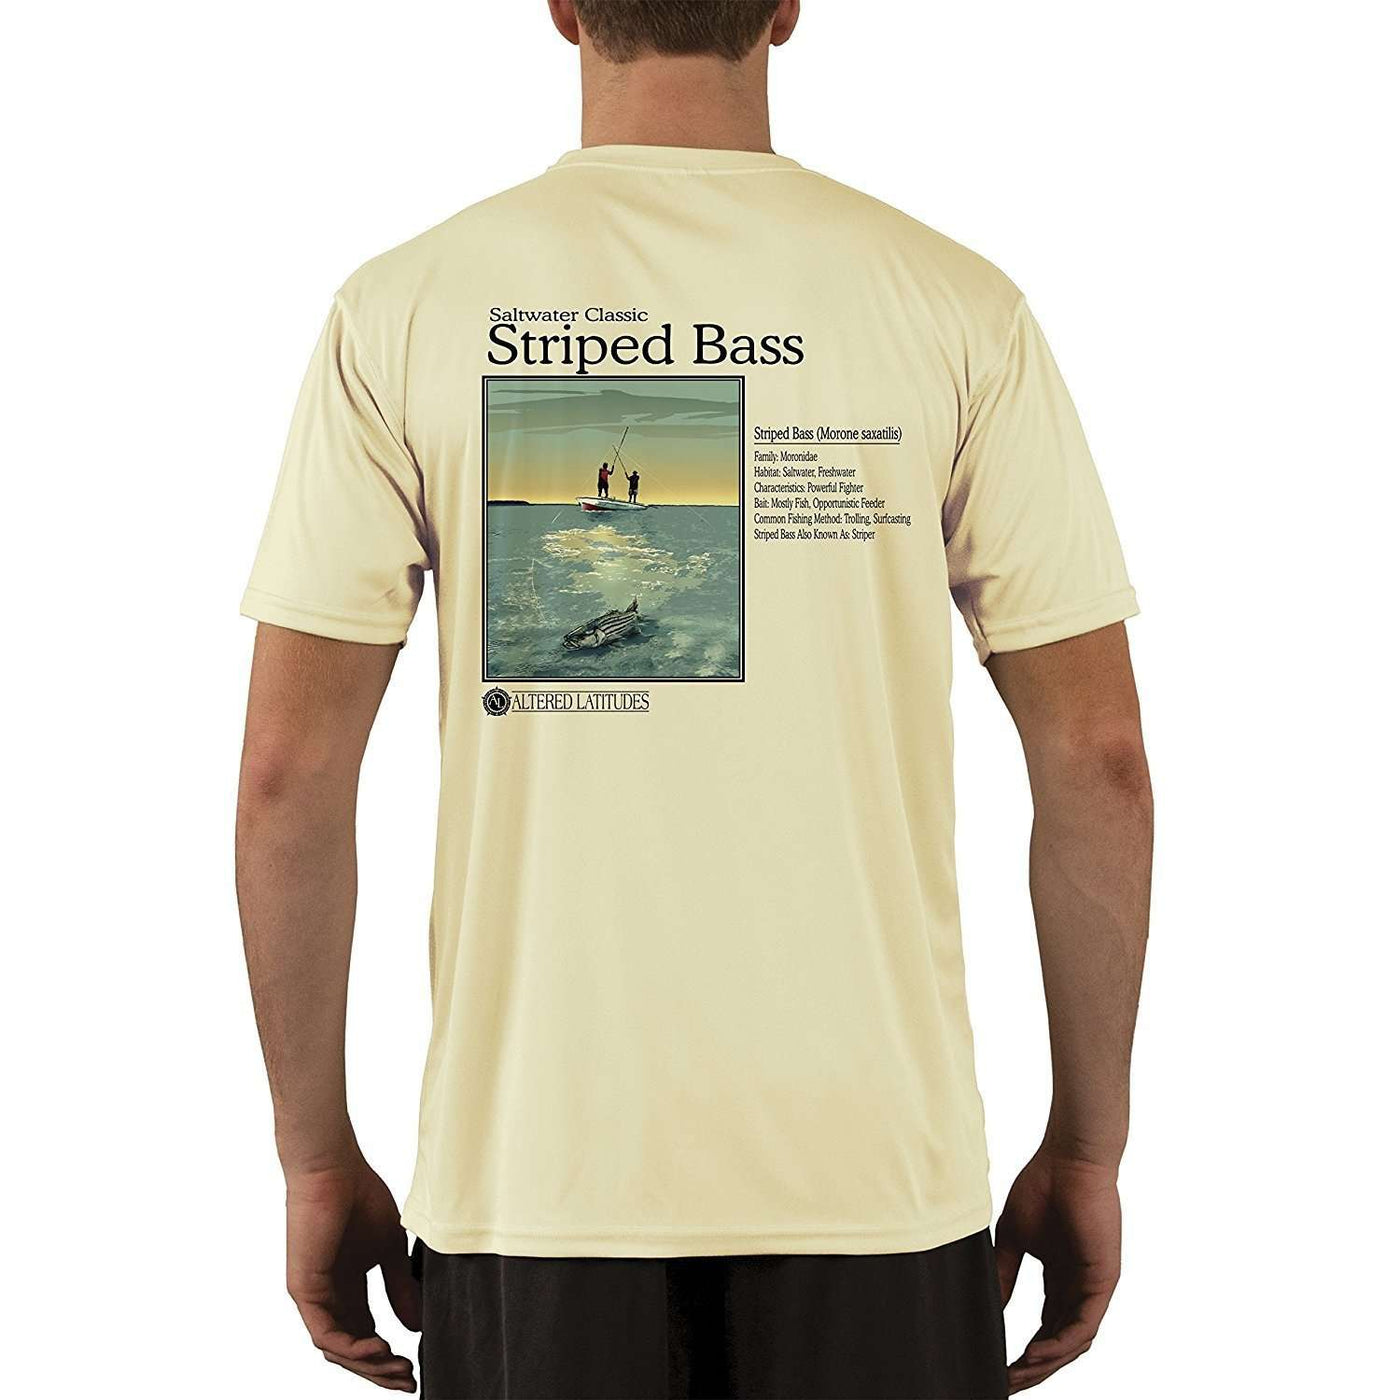 Saltwater Classic Striped Bass Men's UPF 50+ Short Sleeve T-Shirt